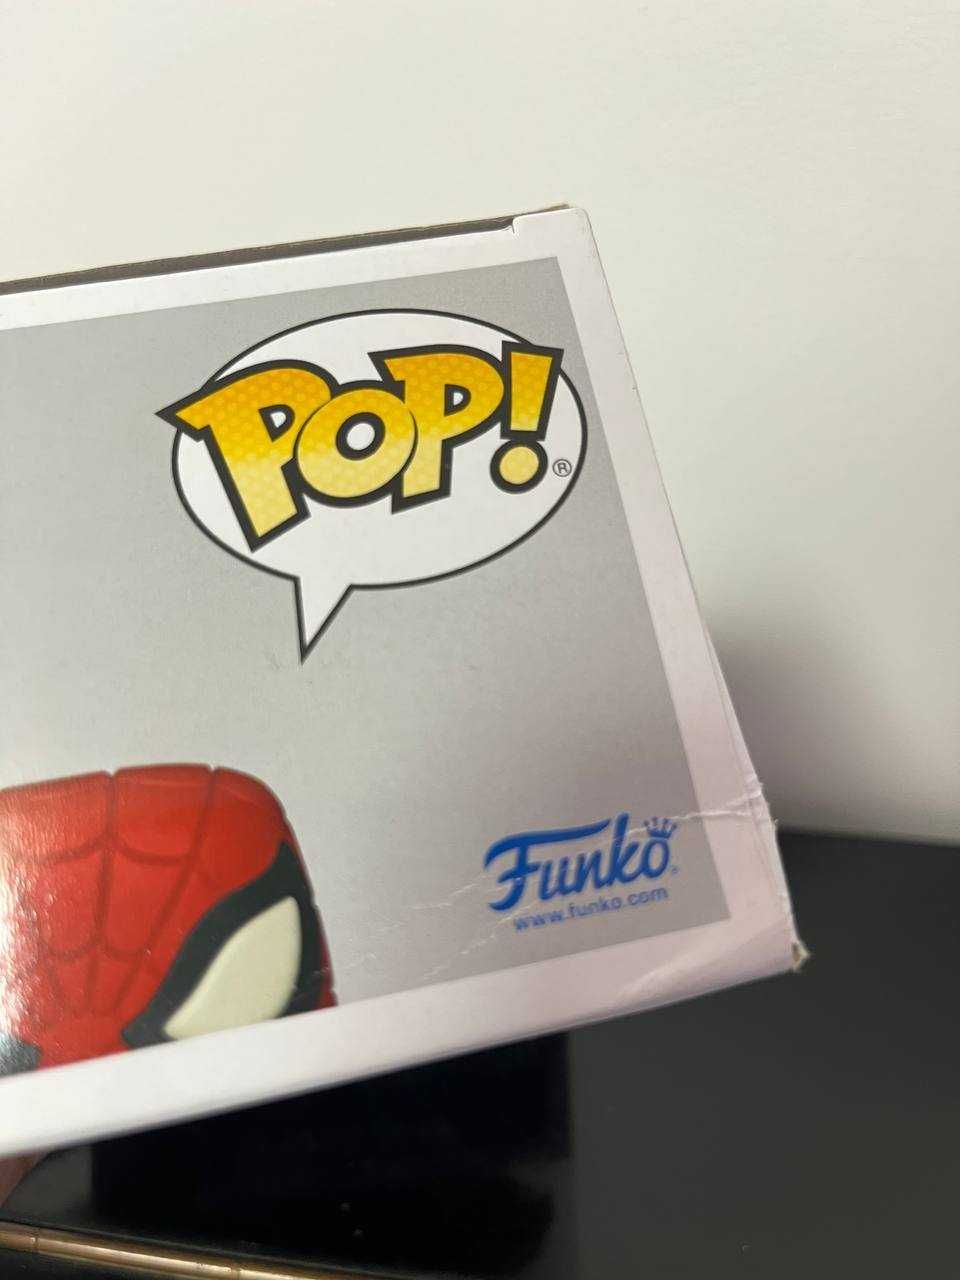 Funko Pop - Spider-Man №932